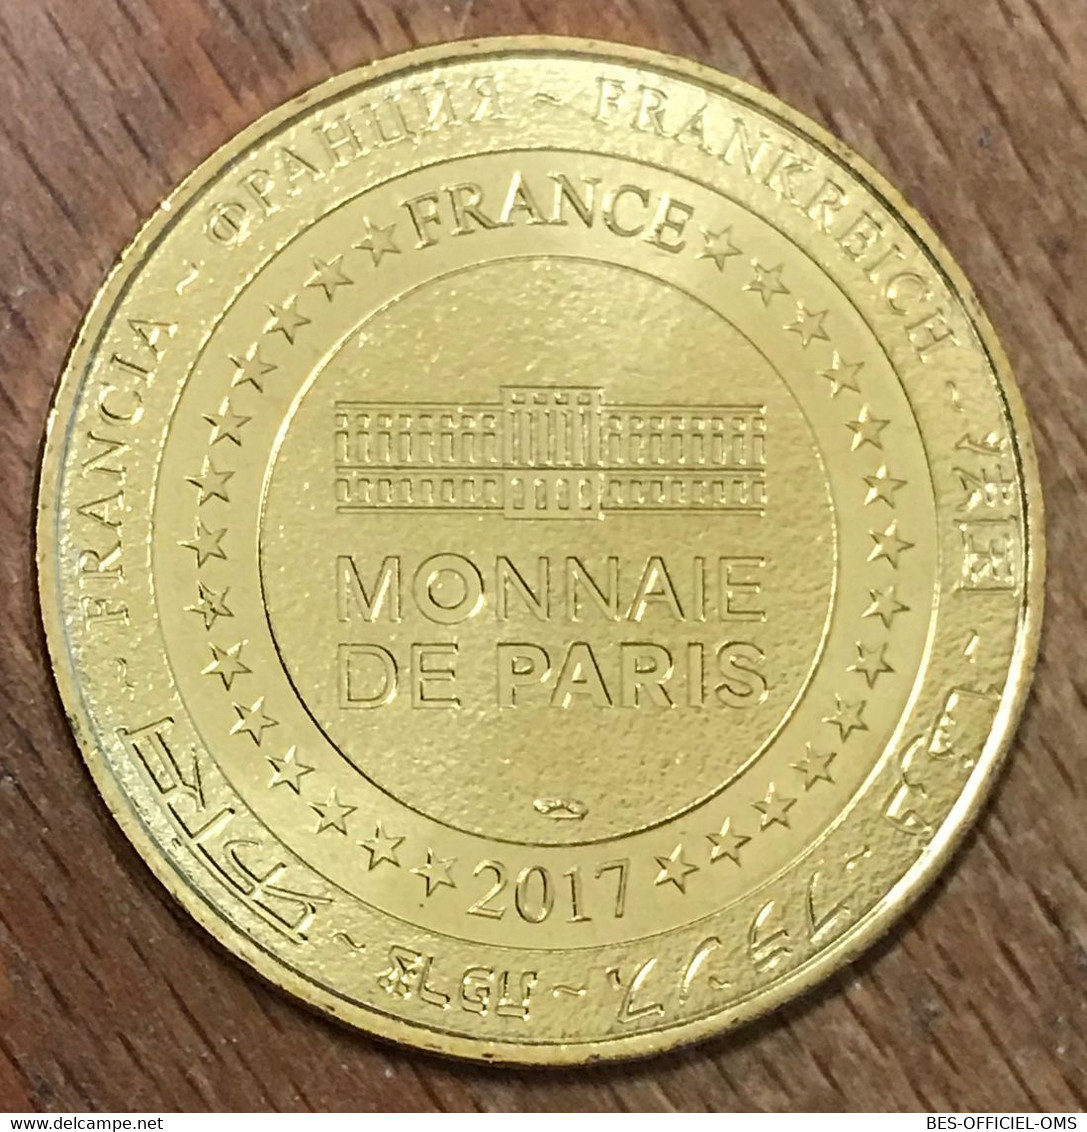 51 SAINTE-MENEHOULD BOIS DU ROY MDP 2017 MÉDAILLE SOUVENIR MONNAIE DE PARIS JETON TOURISTIQUE MEDALS TOKENS COINS - 2017